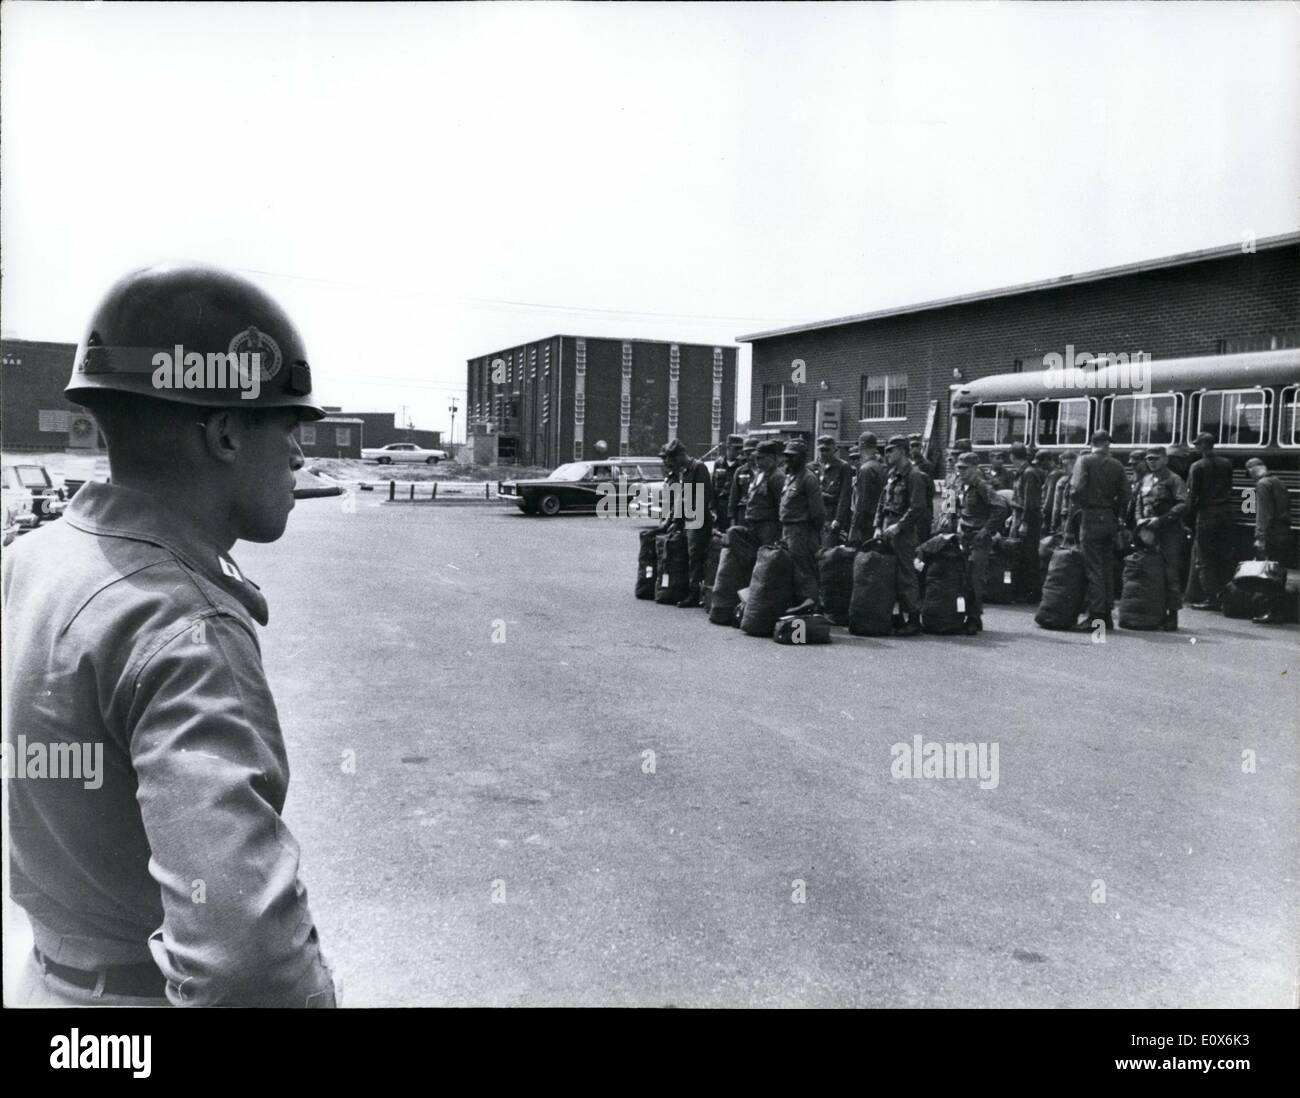 Agosto 08, 1965 - Army basic training center Fort Dix, N.J: i sacchi vengono riempiti con il materiale ricevuto al primo problema di abbigliamento. Le reclute sono in attesa di essere spostate nella loro caserma. Foto Stock